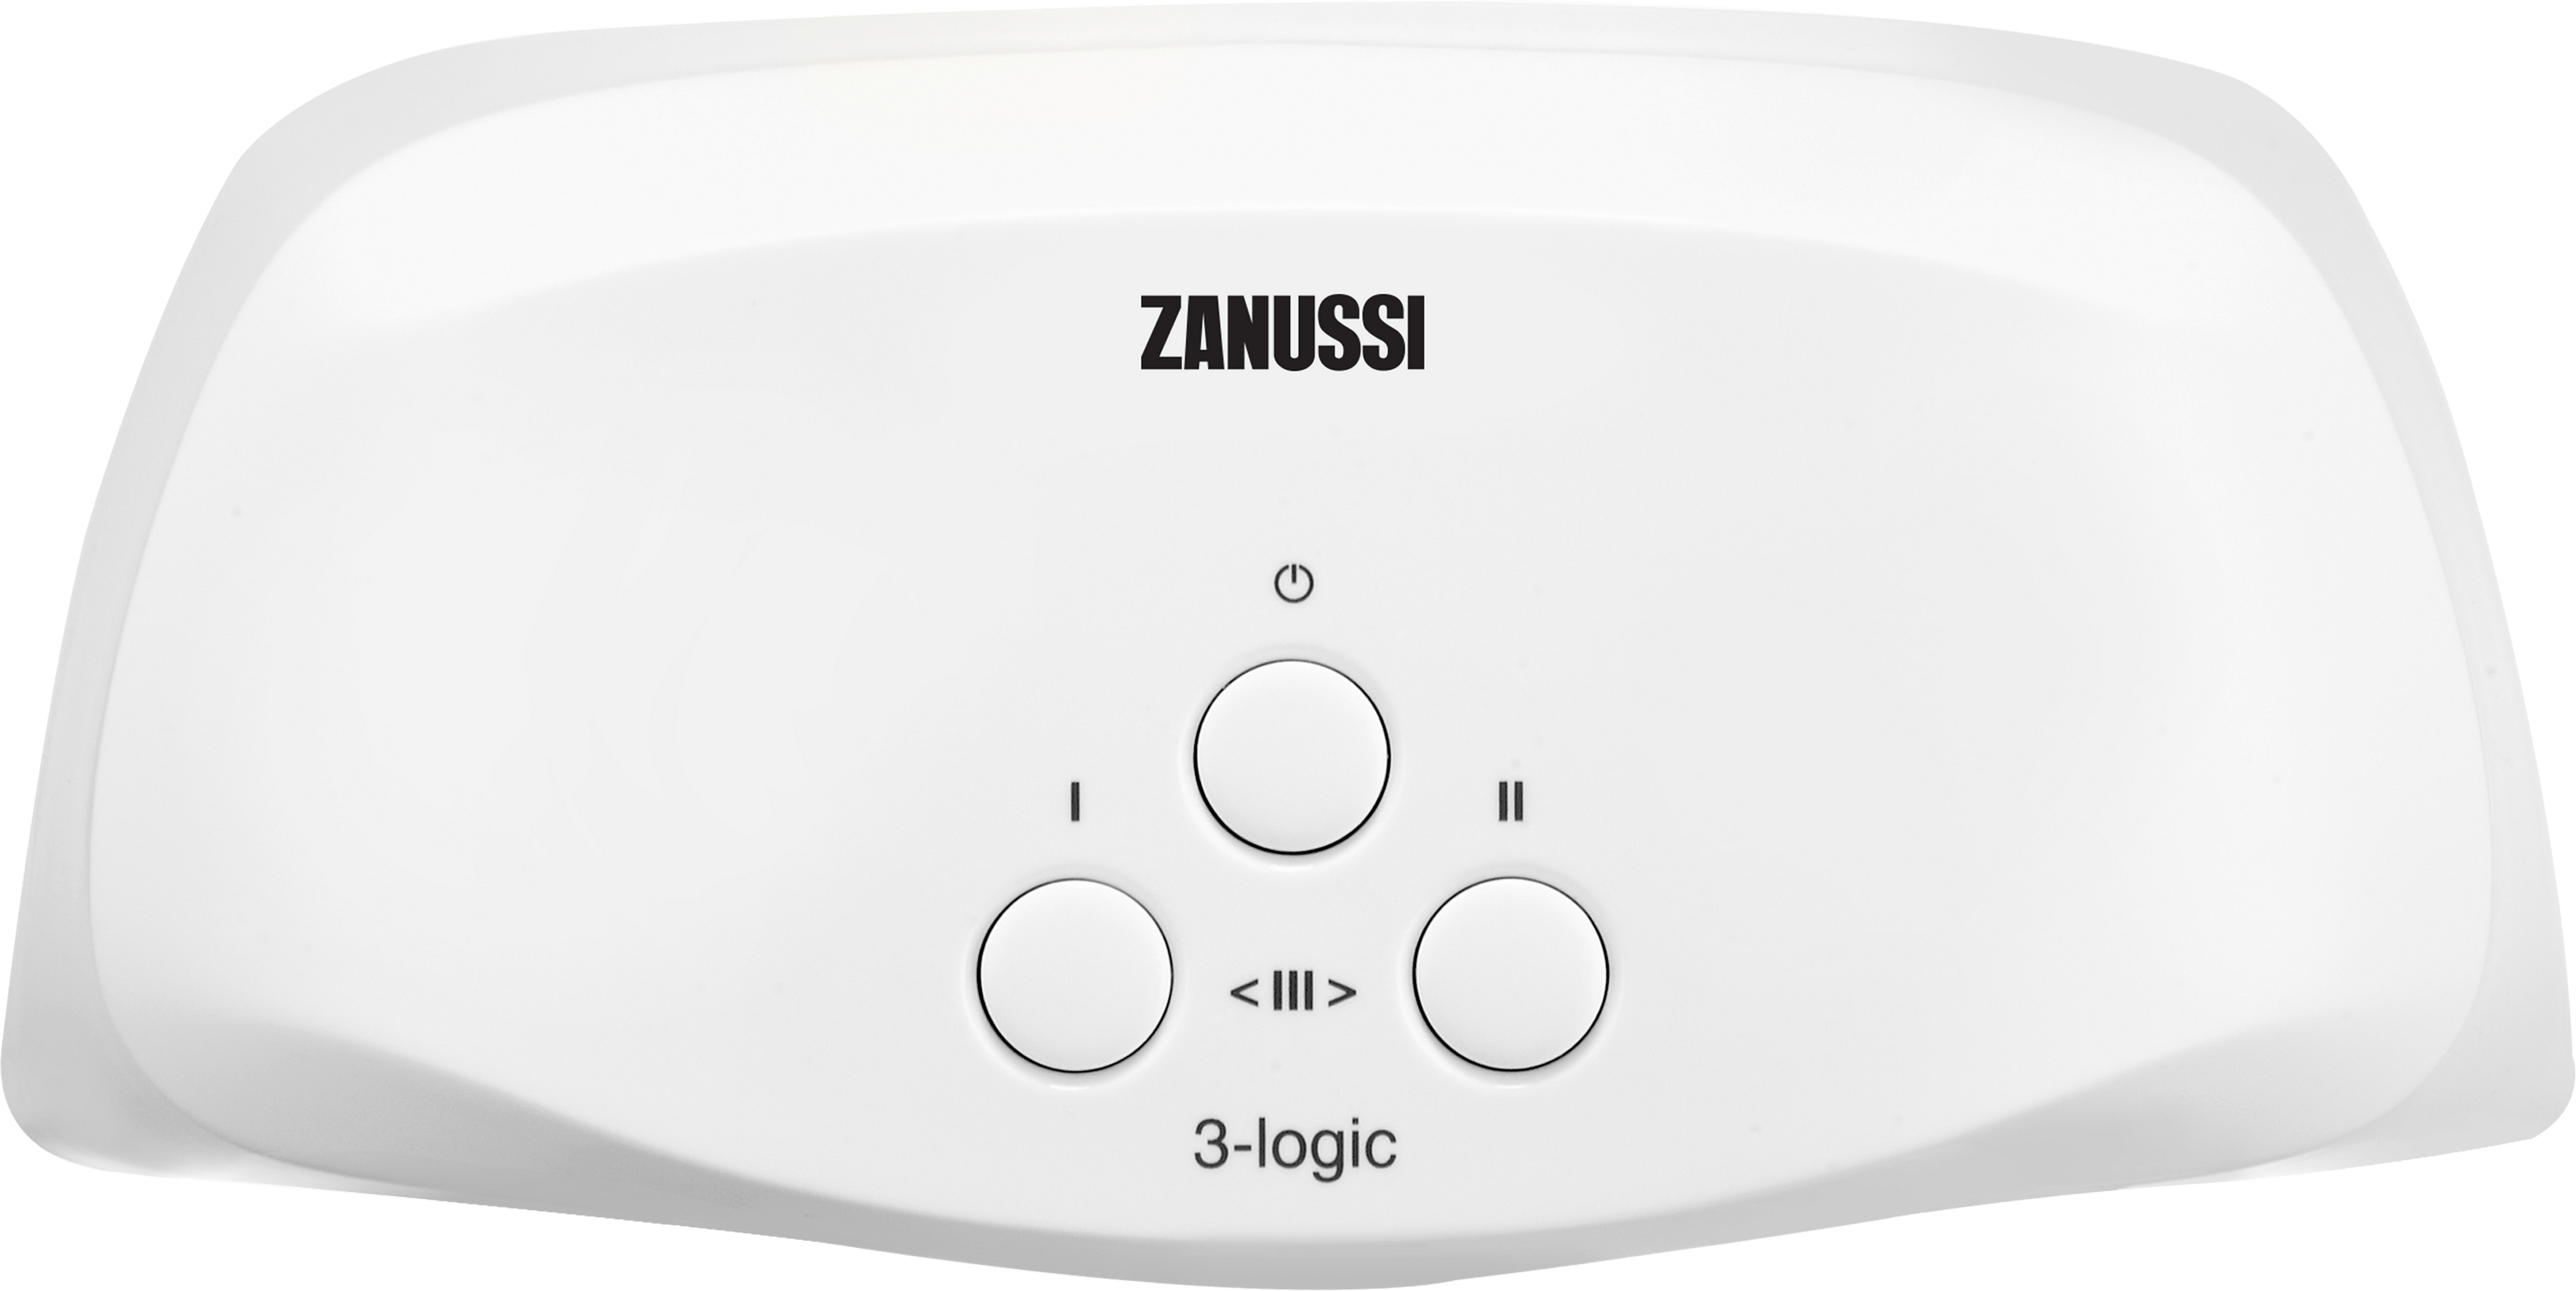 Купить проточный водонагреватель Zanussi 3-logic T (3,5 кВт) в Киеве